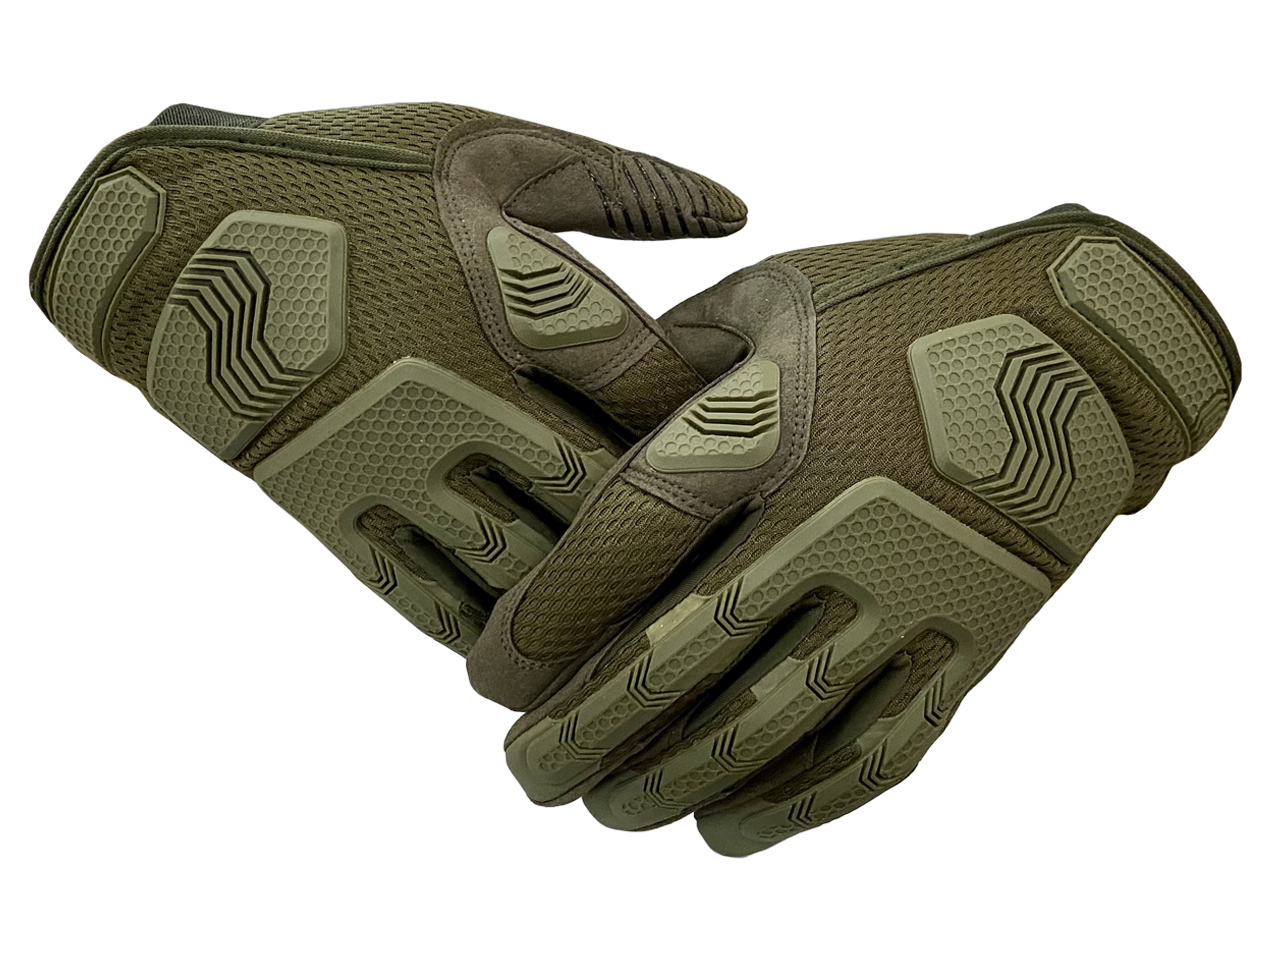 Купить защитные тактические перчатки хаки-олива